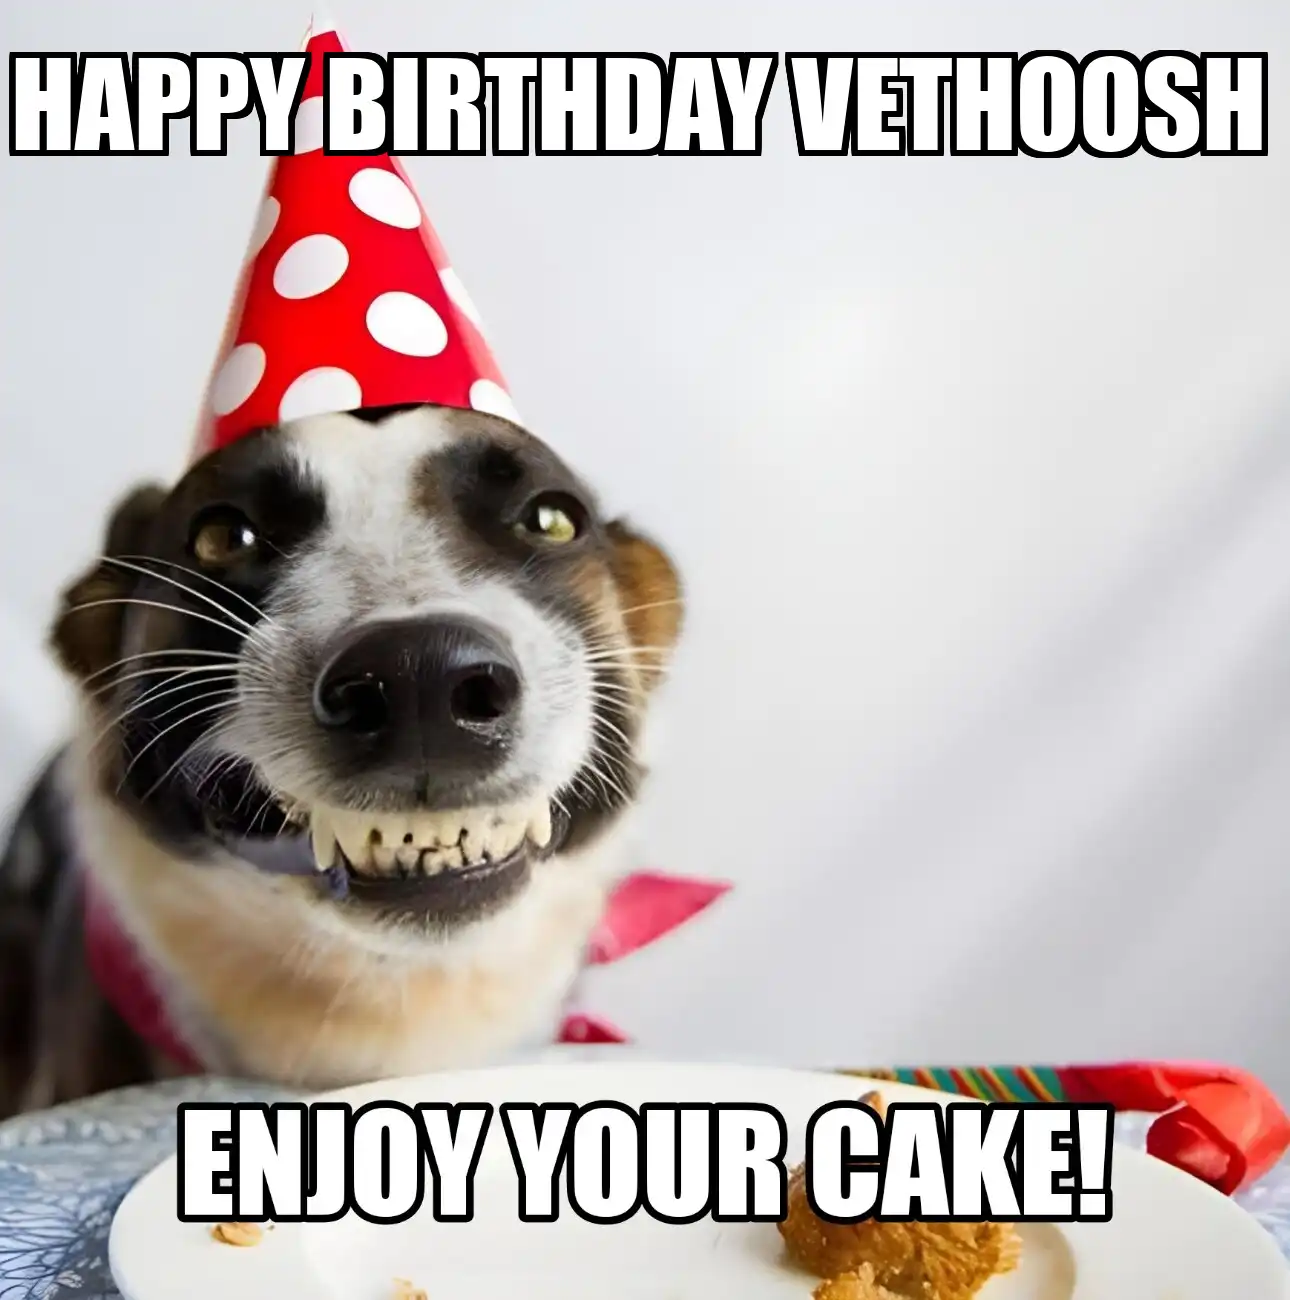 Happy Birthday Vethoosh Enjoy Your Cake Dog Meme